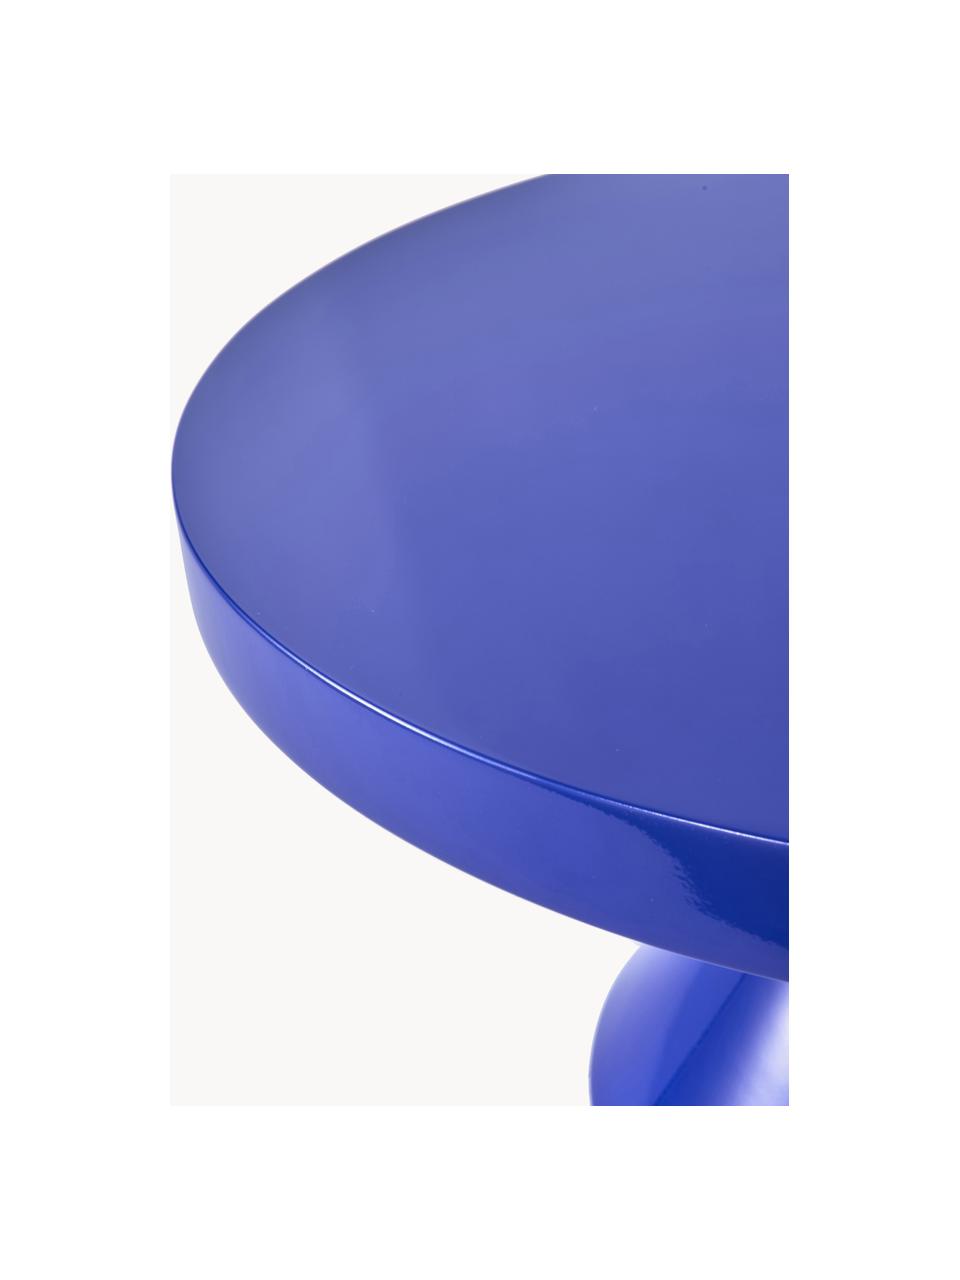 Table basse ronde Zig Zag, Plastique, laqué, Bleu roi, Ø 60 cm